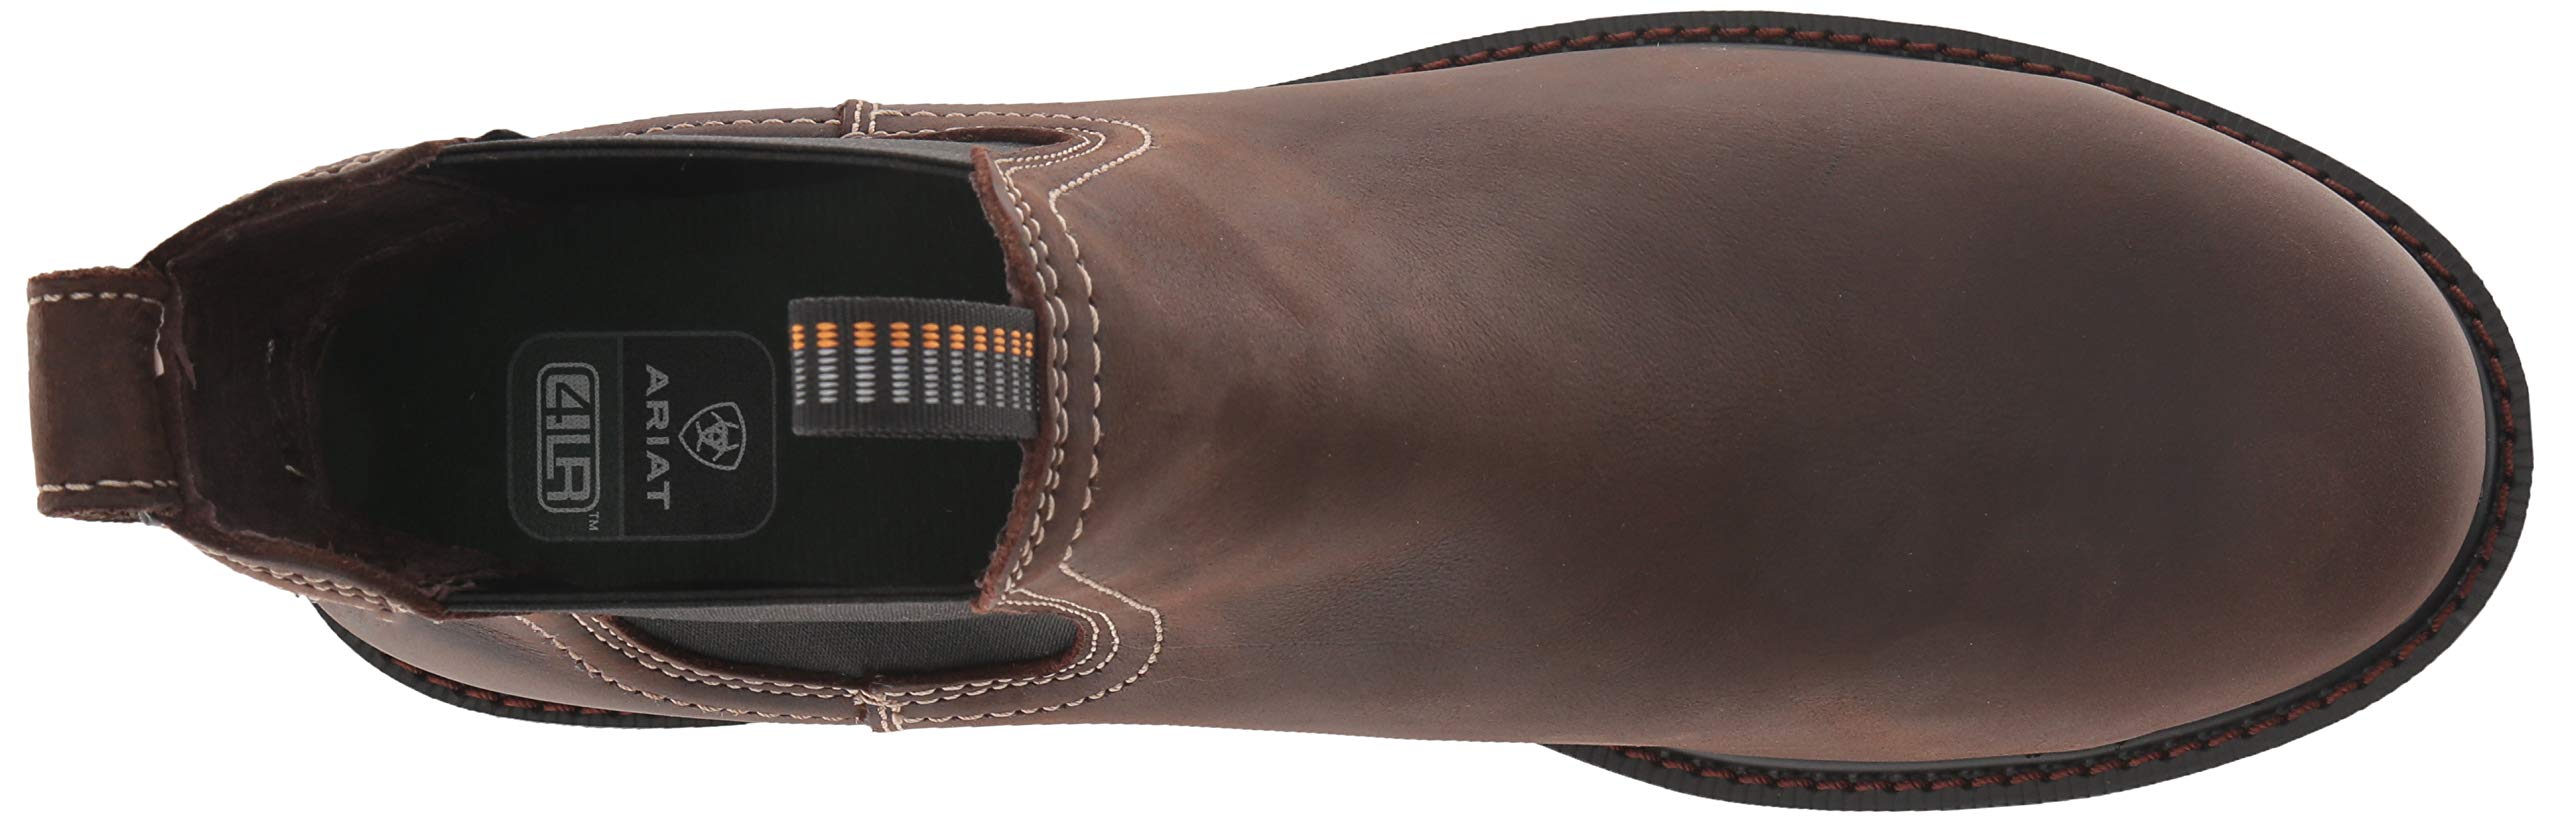 Ariat Groundbreaker Chelsea Waterproof Steel Toe Work Boot – Men’s Leather Boots